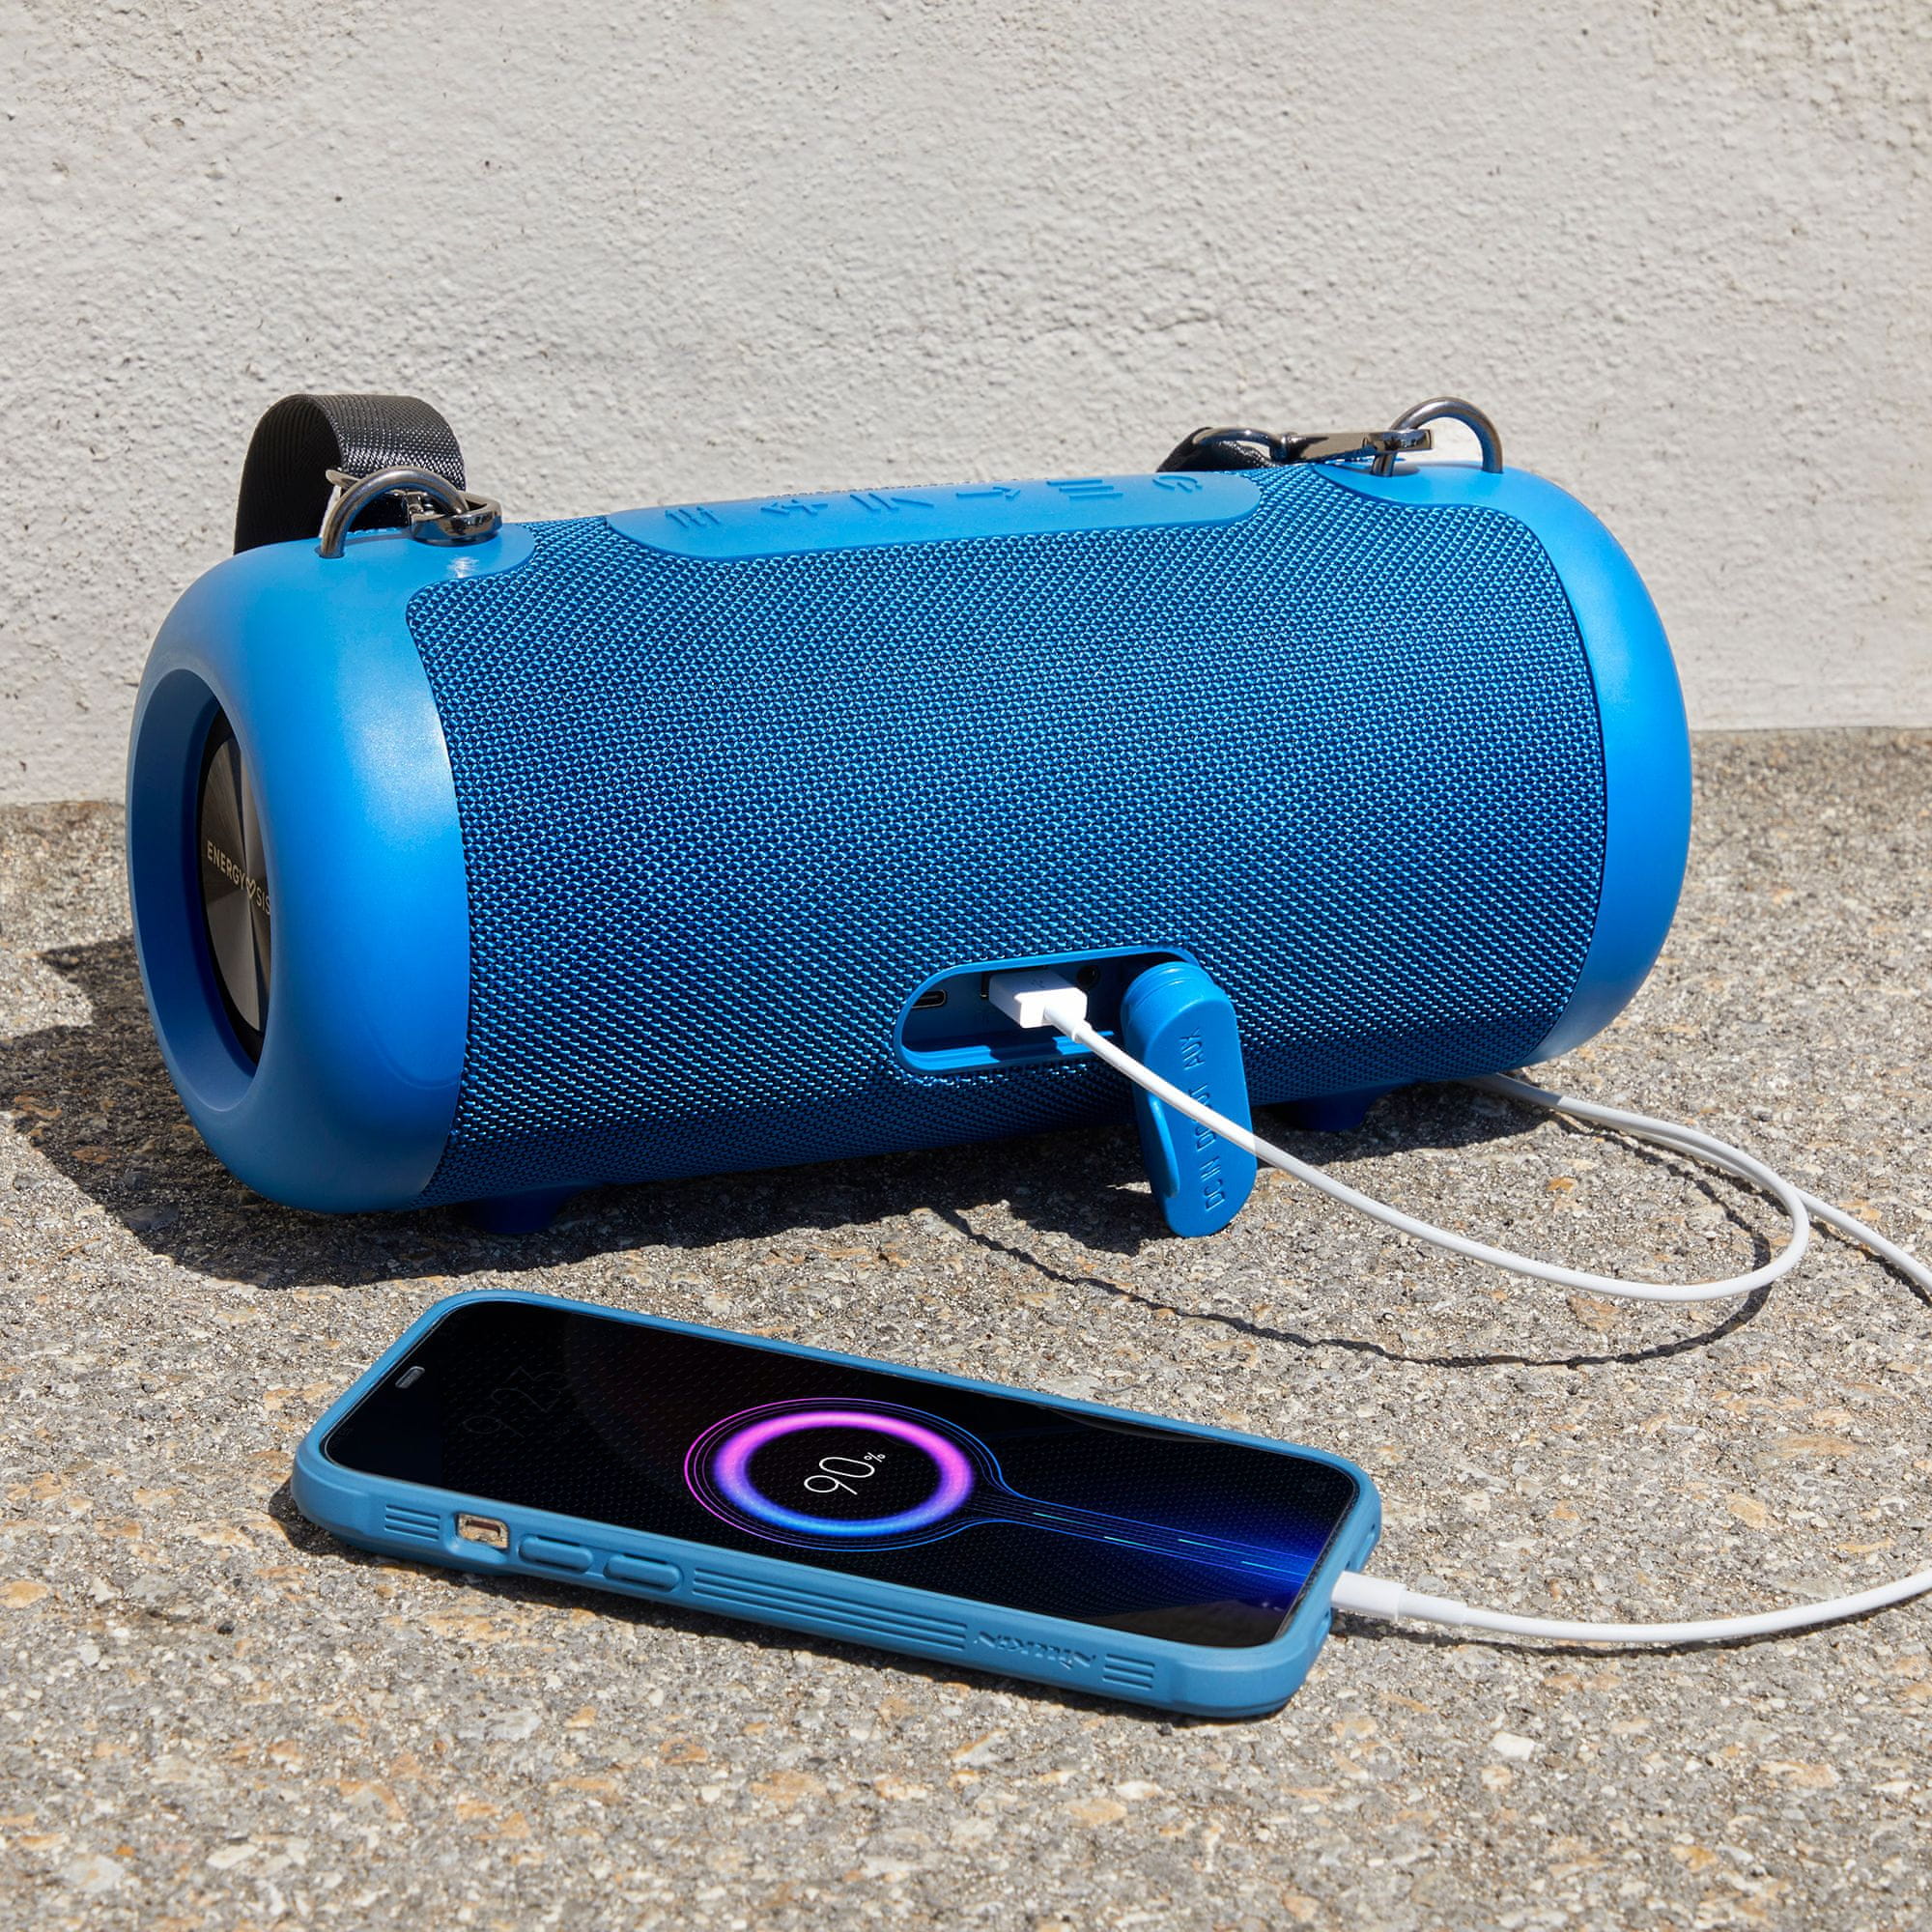  hordozható hangszóró energy sistem Urban Box 6 ipx6 vízállóság mikrofon kihangosító akkumulátor élettartama 12 óra töltésenként handsfree 